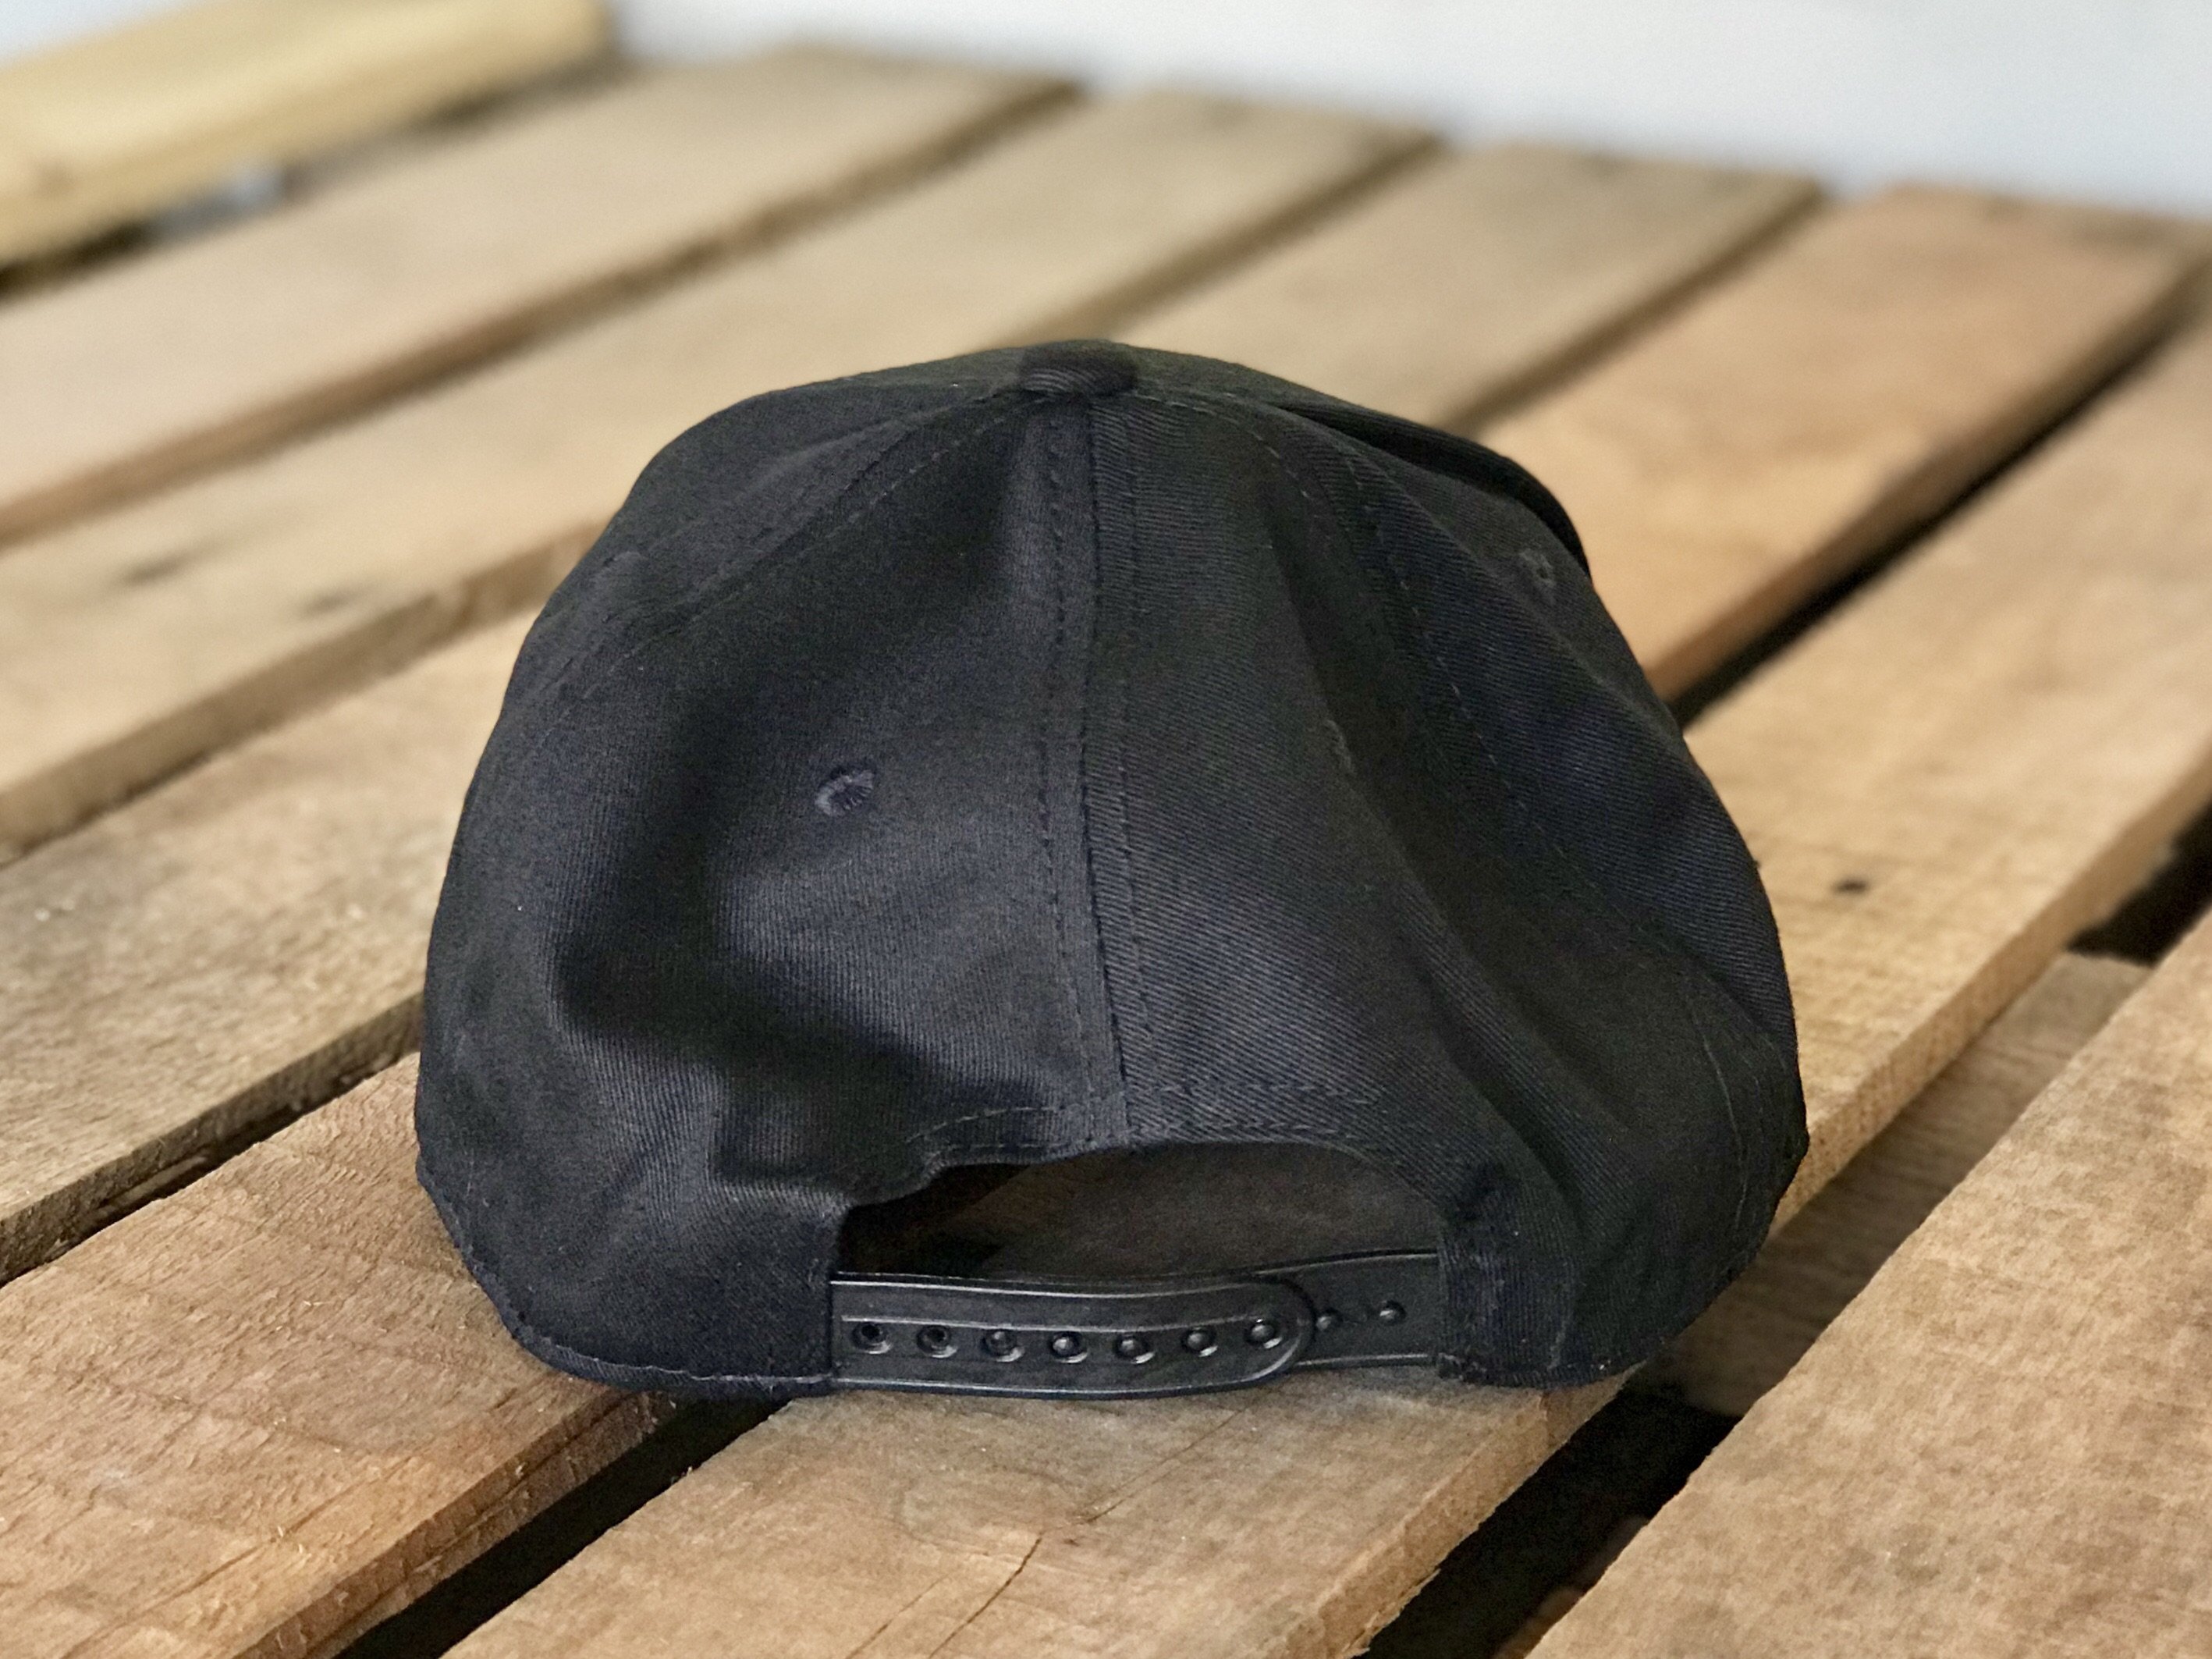 Black Homeland Security SnapBack Hat